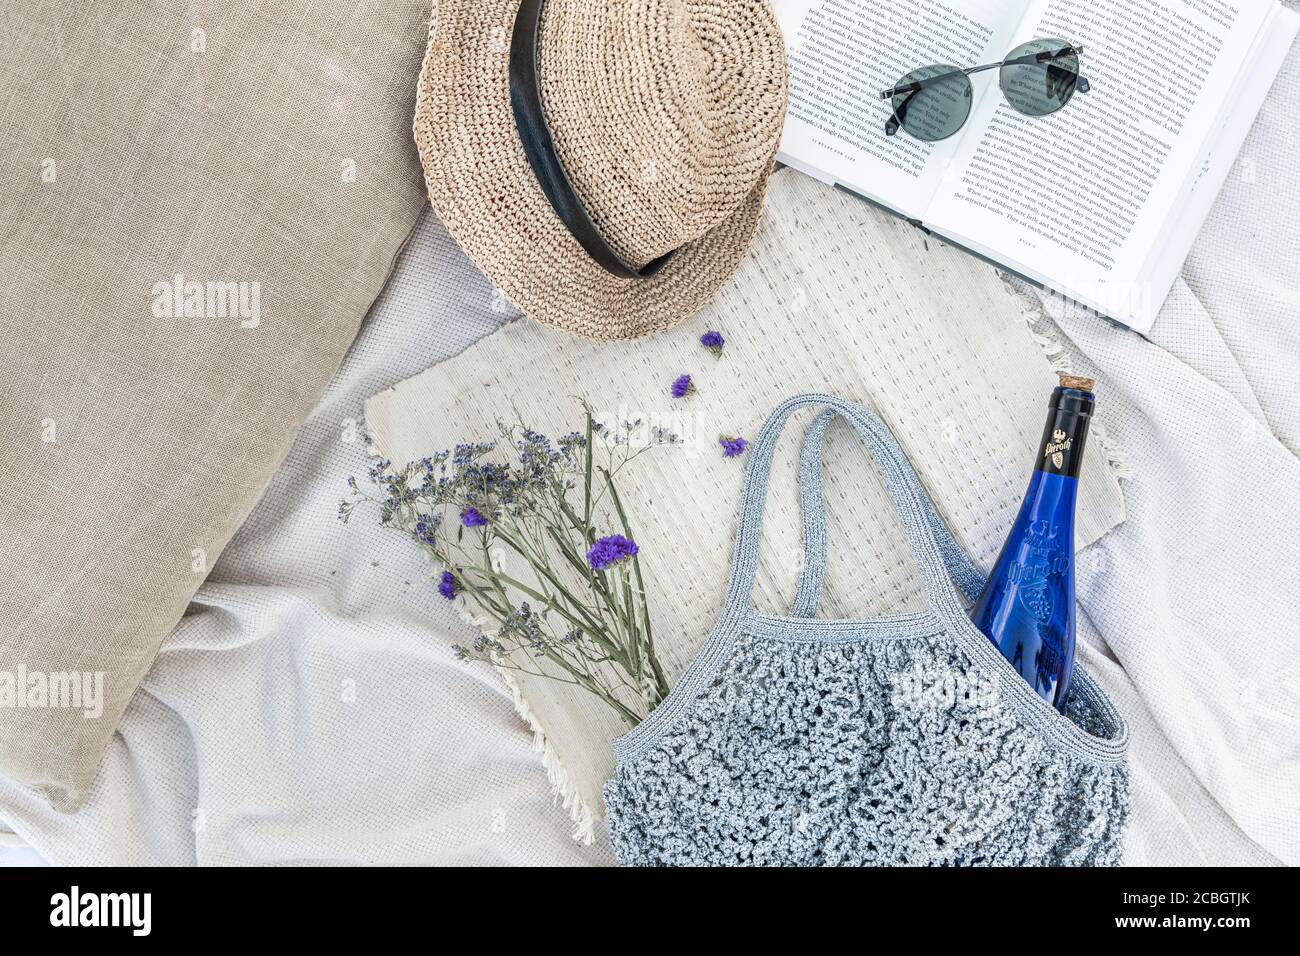 Une bouteille de vin, de la lavande pourpre et un livre sur une couverture de pique-nique à la plage lors d'une chaude journée d'été Banque D'Images